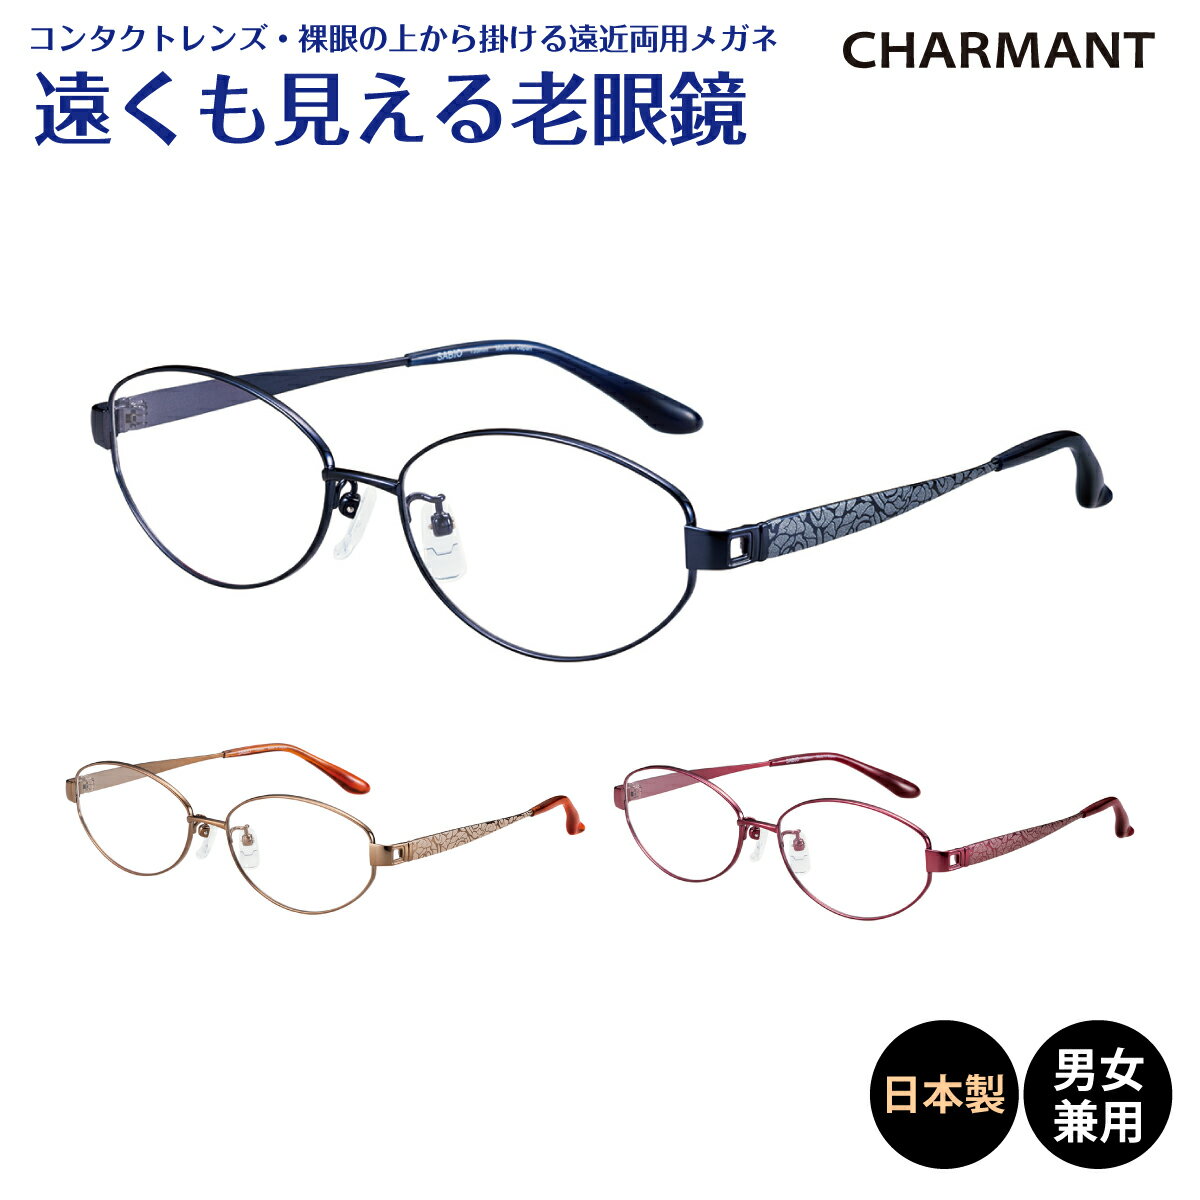 遠くも見える老眼鏡 遠近両用 日本製 CHARMANT シャ